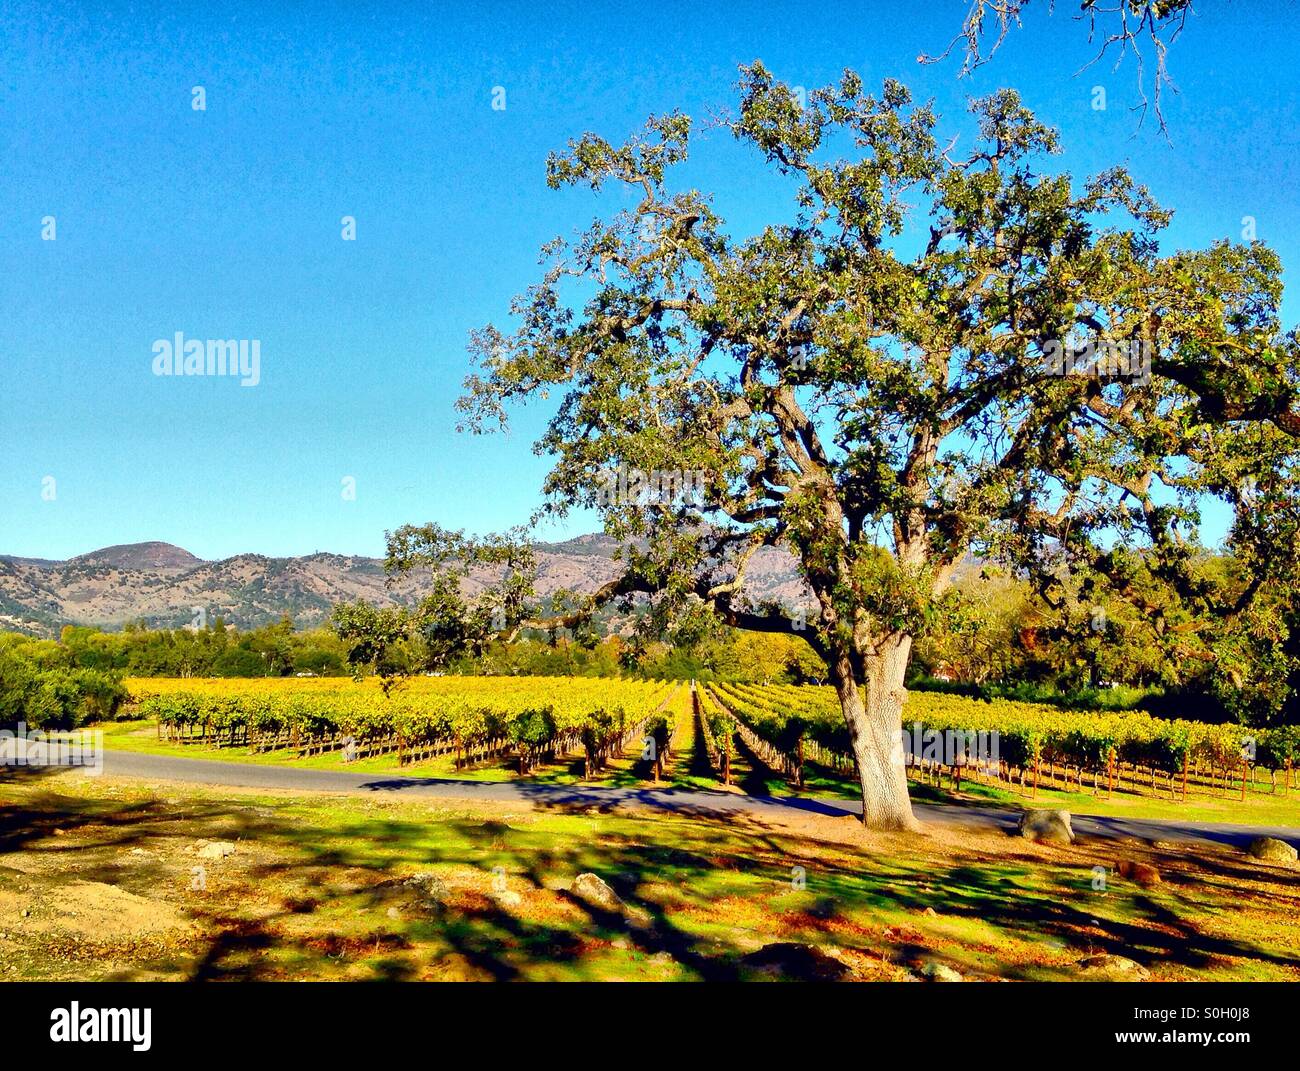 Vineyard, California Stock Photo